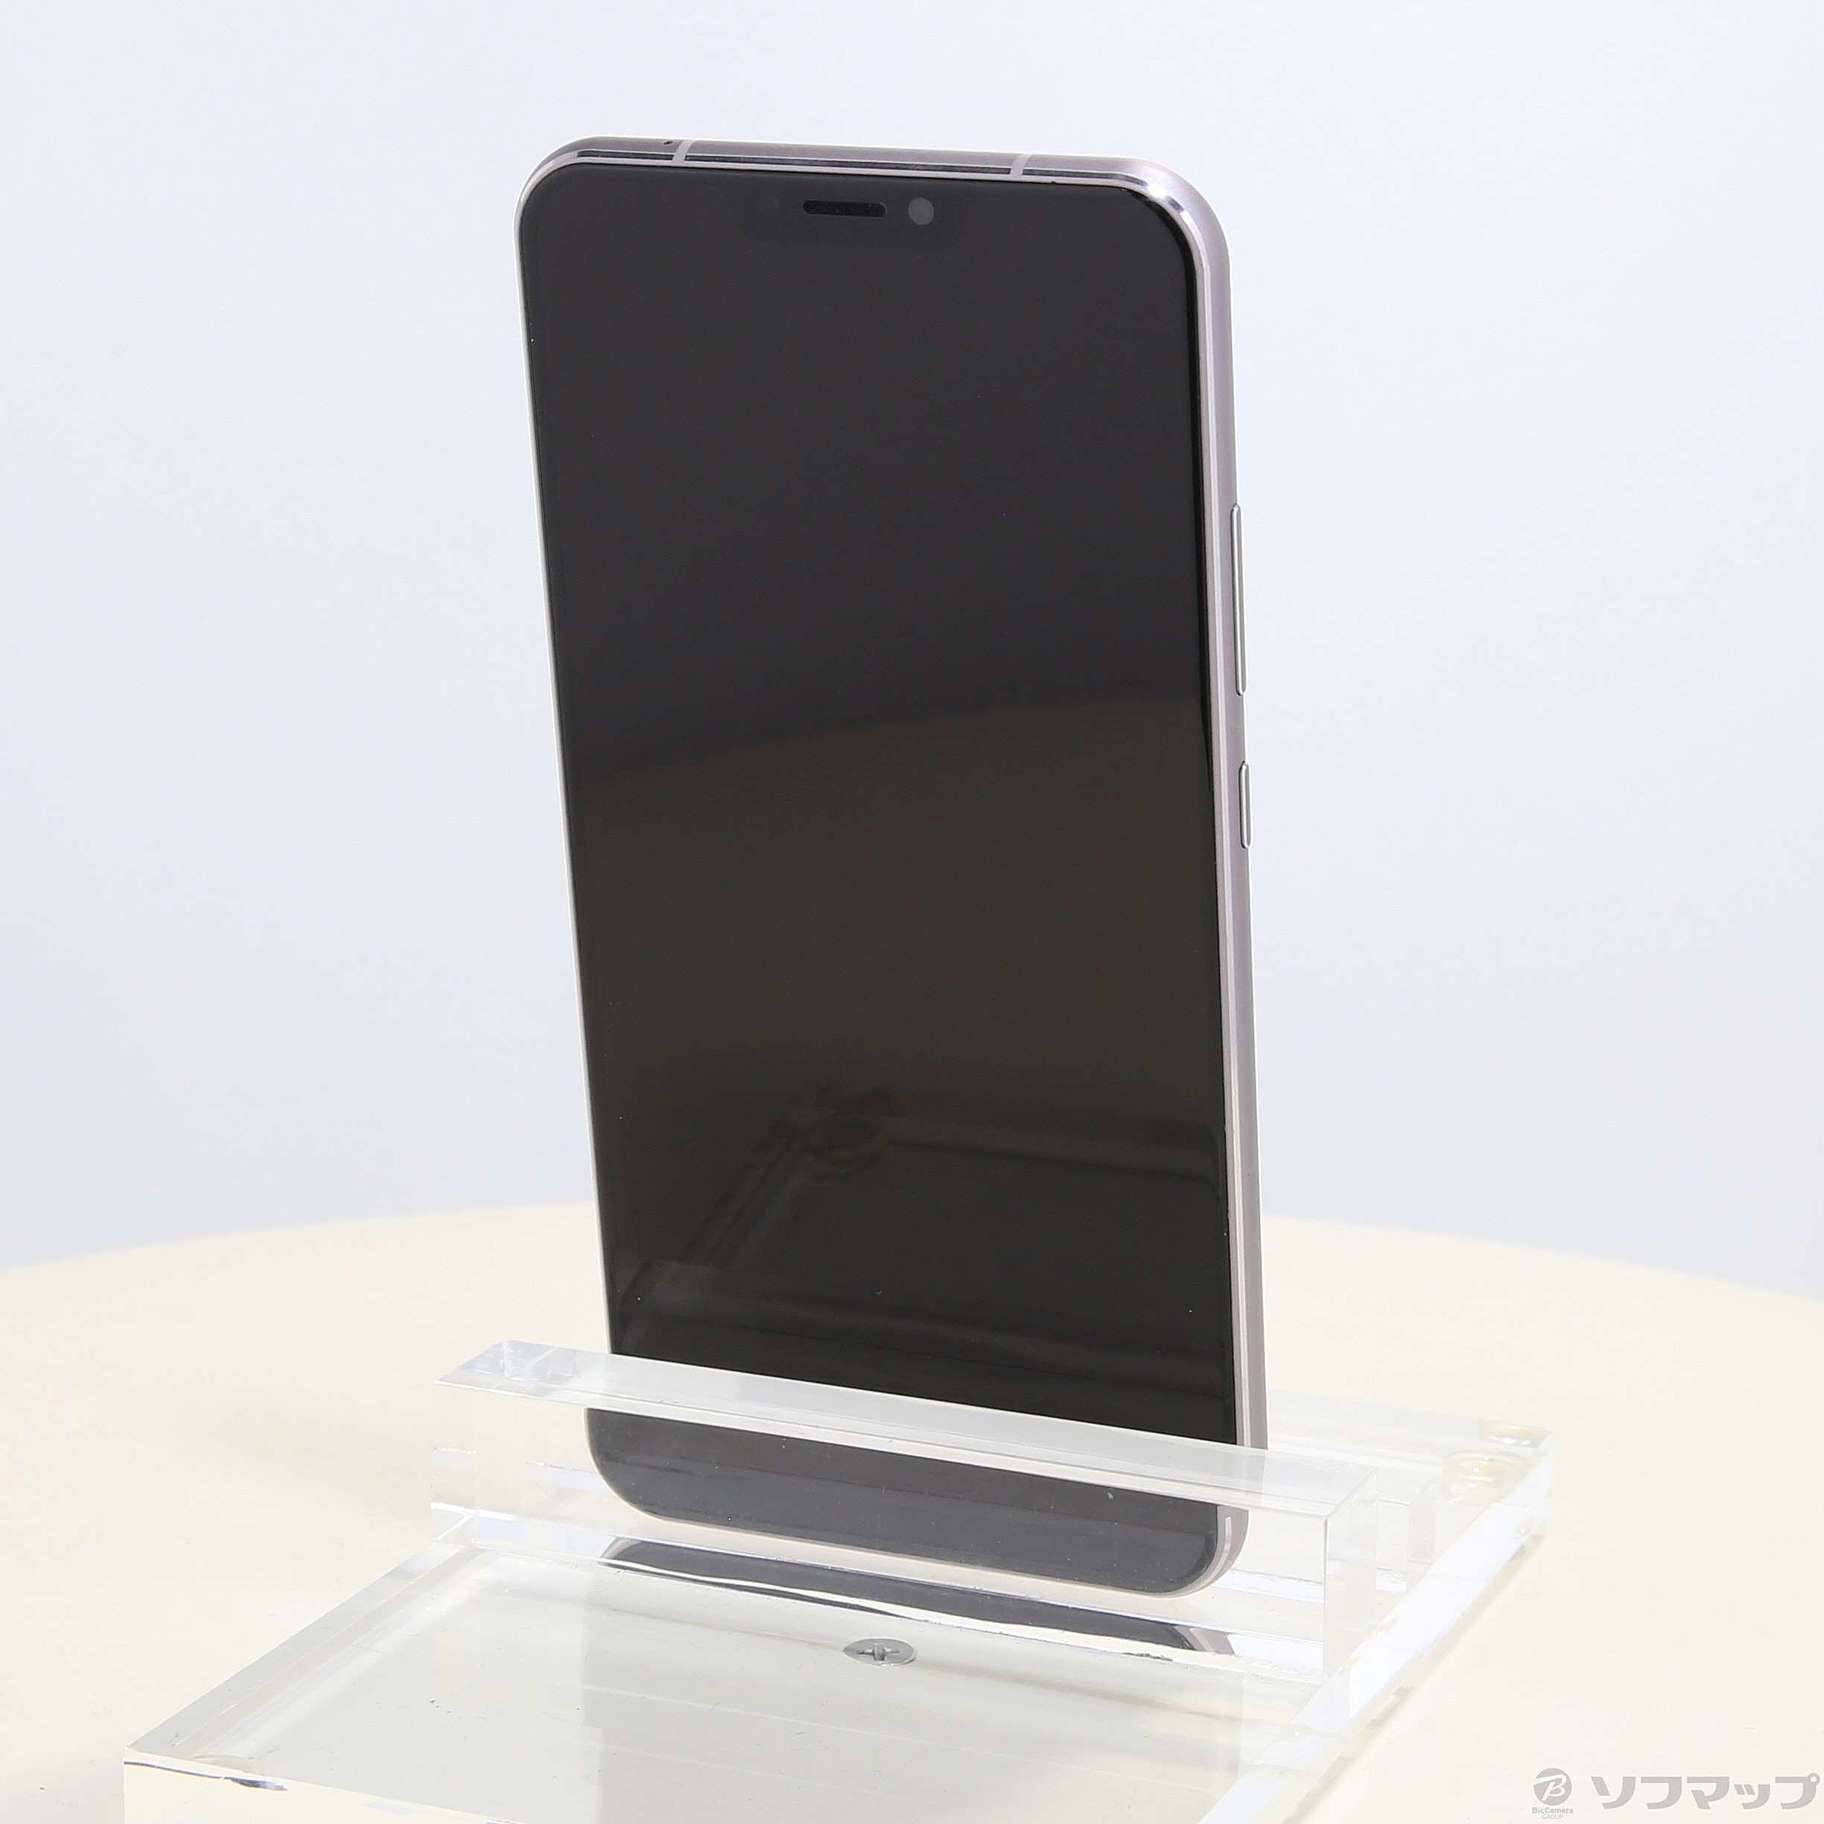 中古】ZenFone 5 64GB スペースシルバー ZE620KL-SL64S6 SIMフリー ...